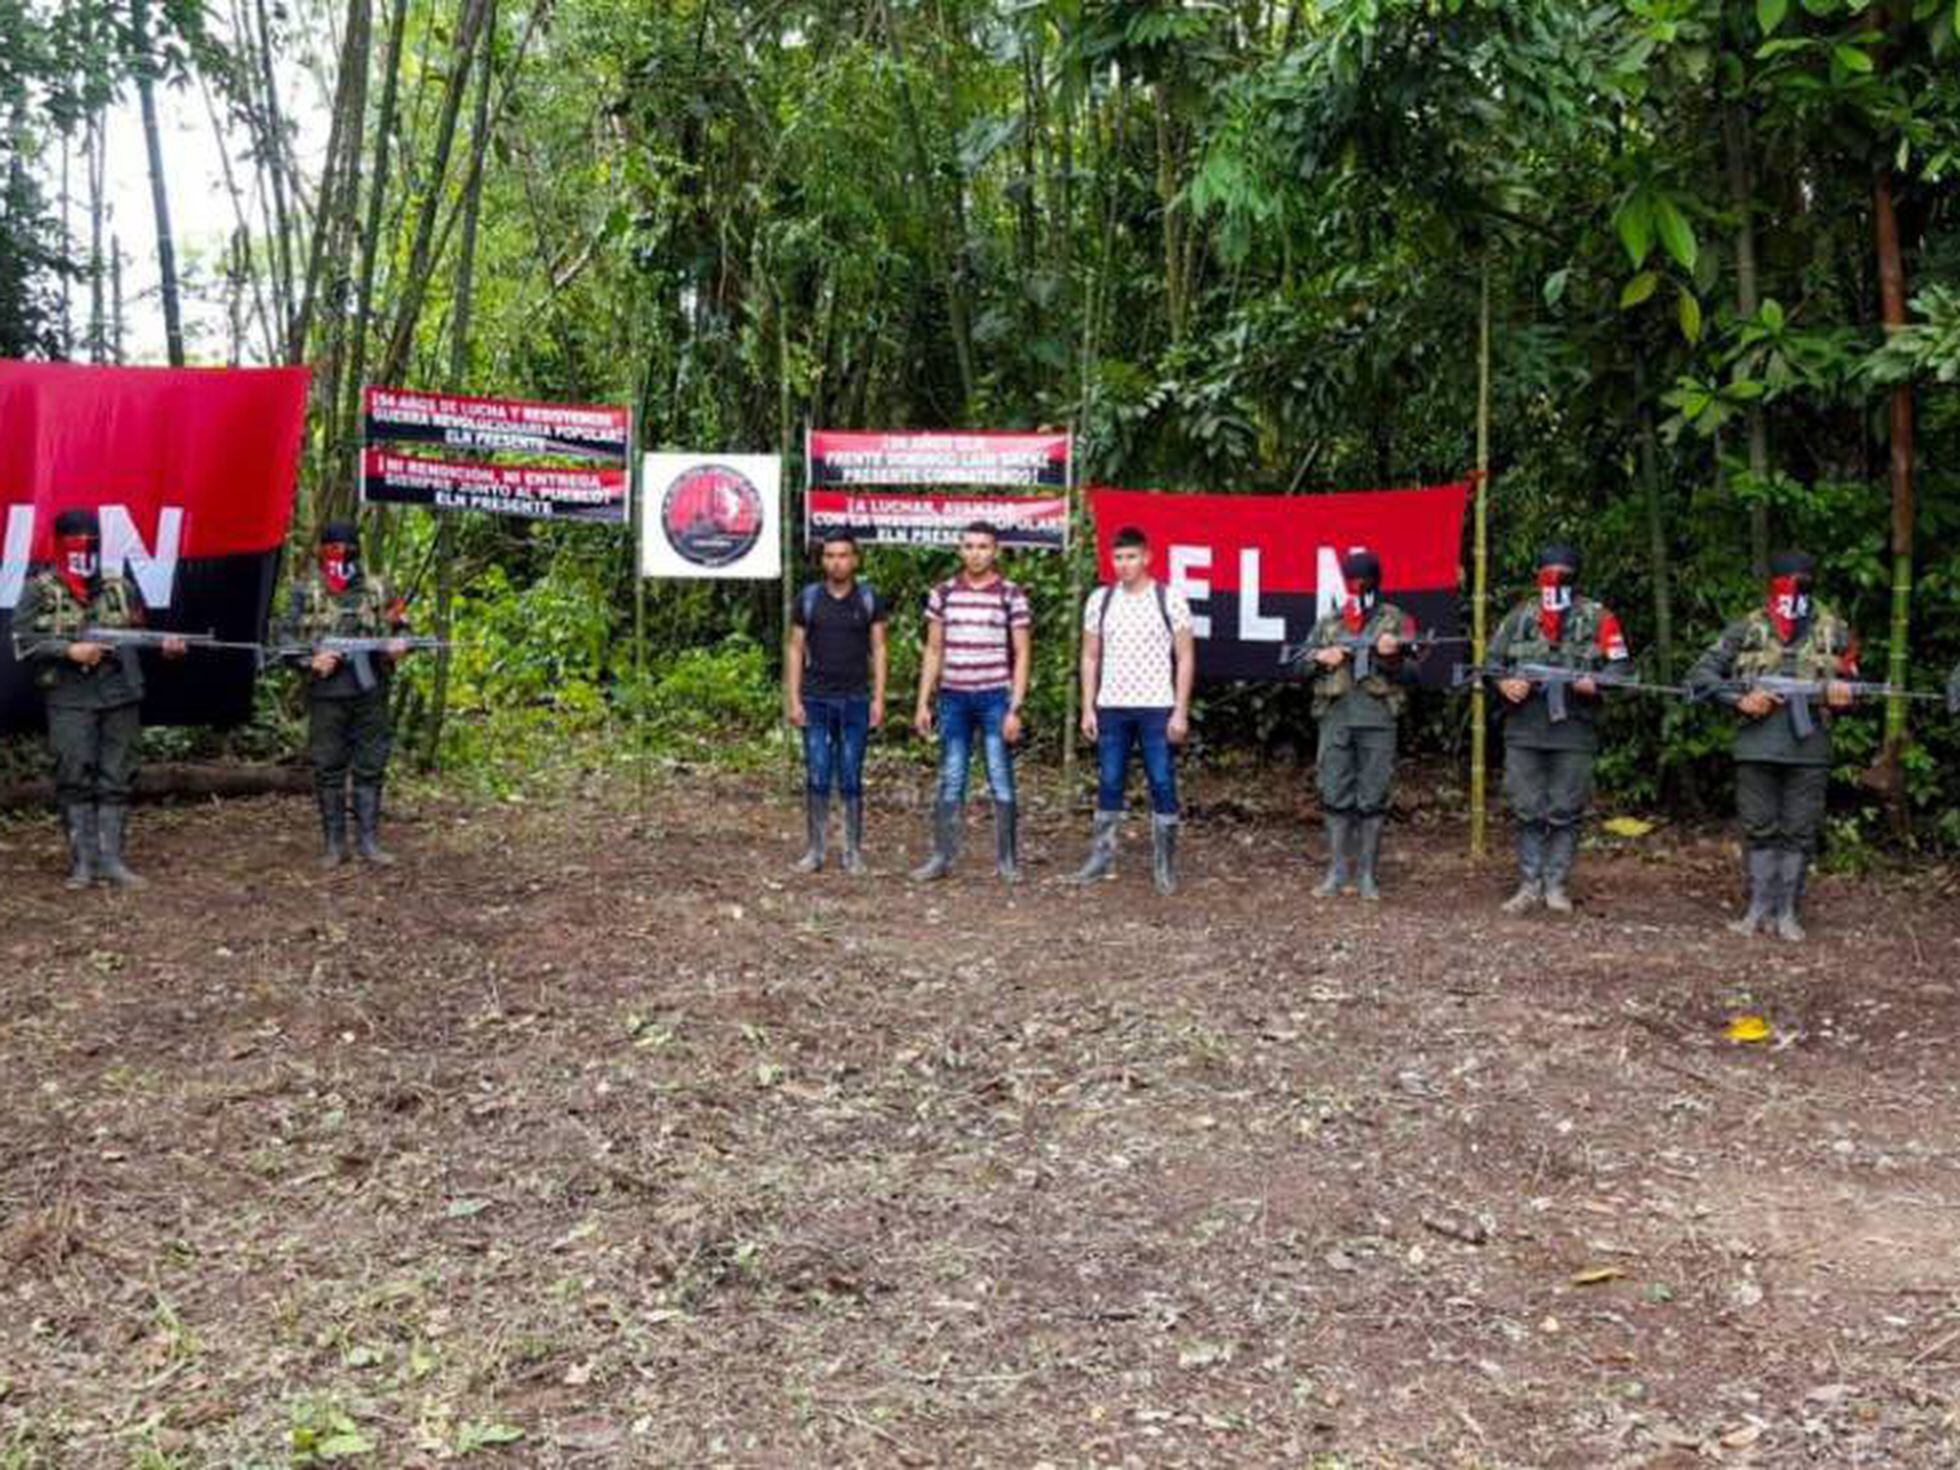 Polêmica entre o Exército colombiano e organizações camponesas